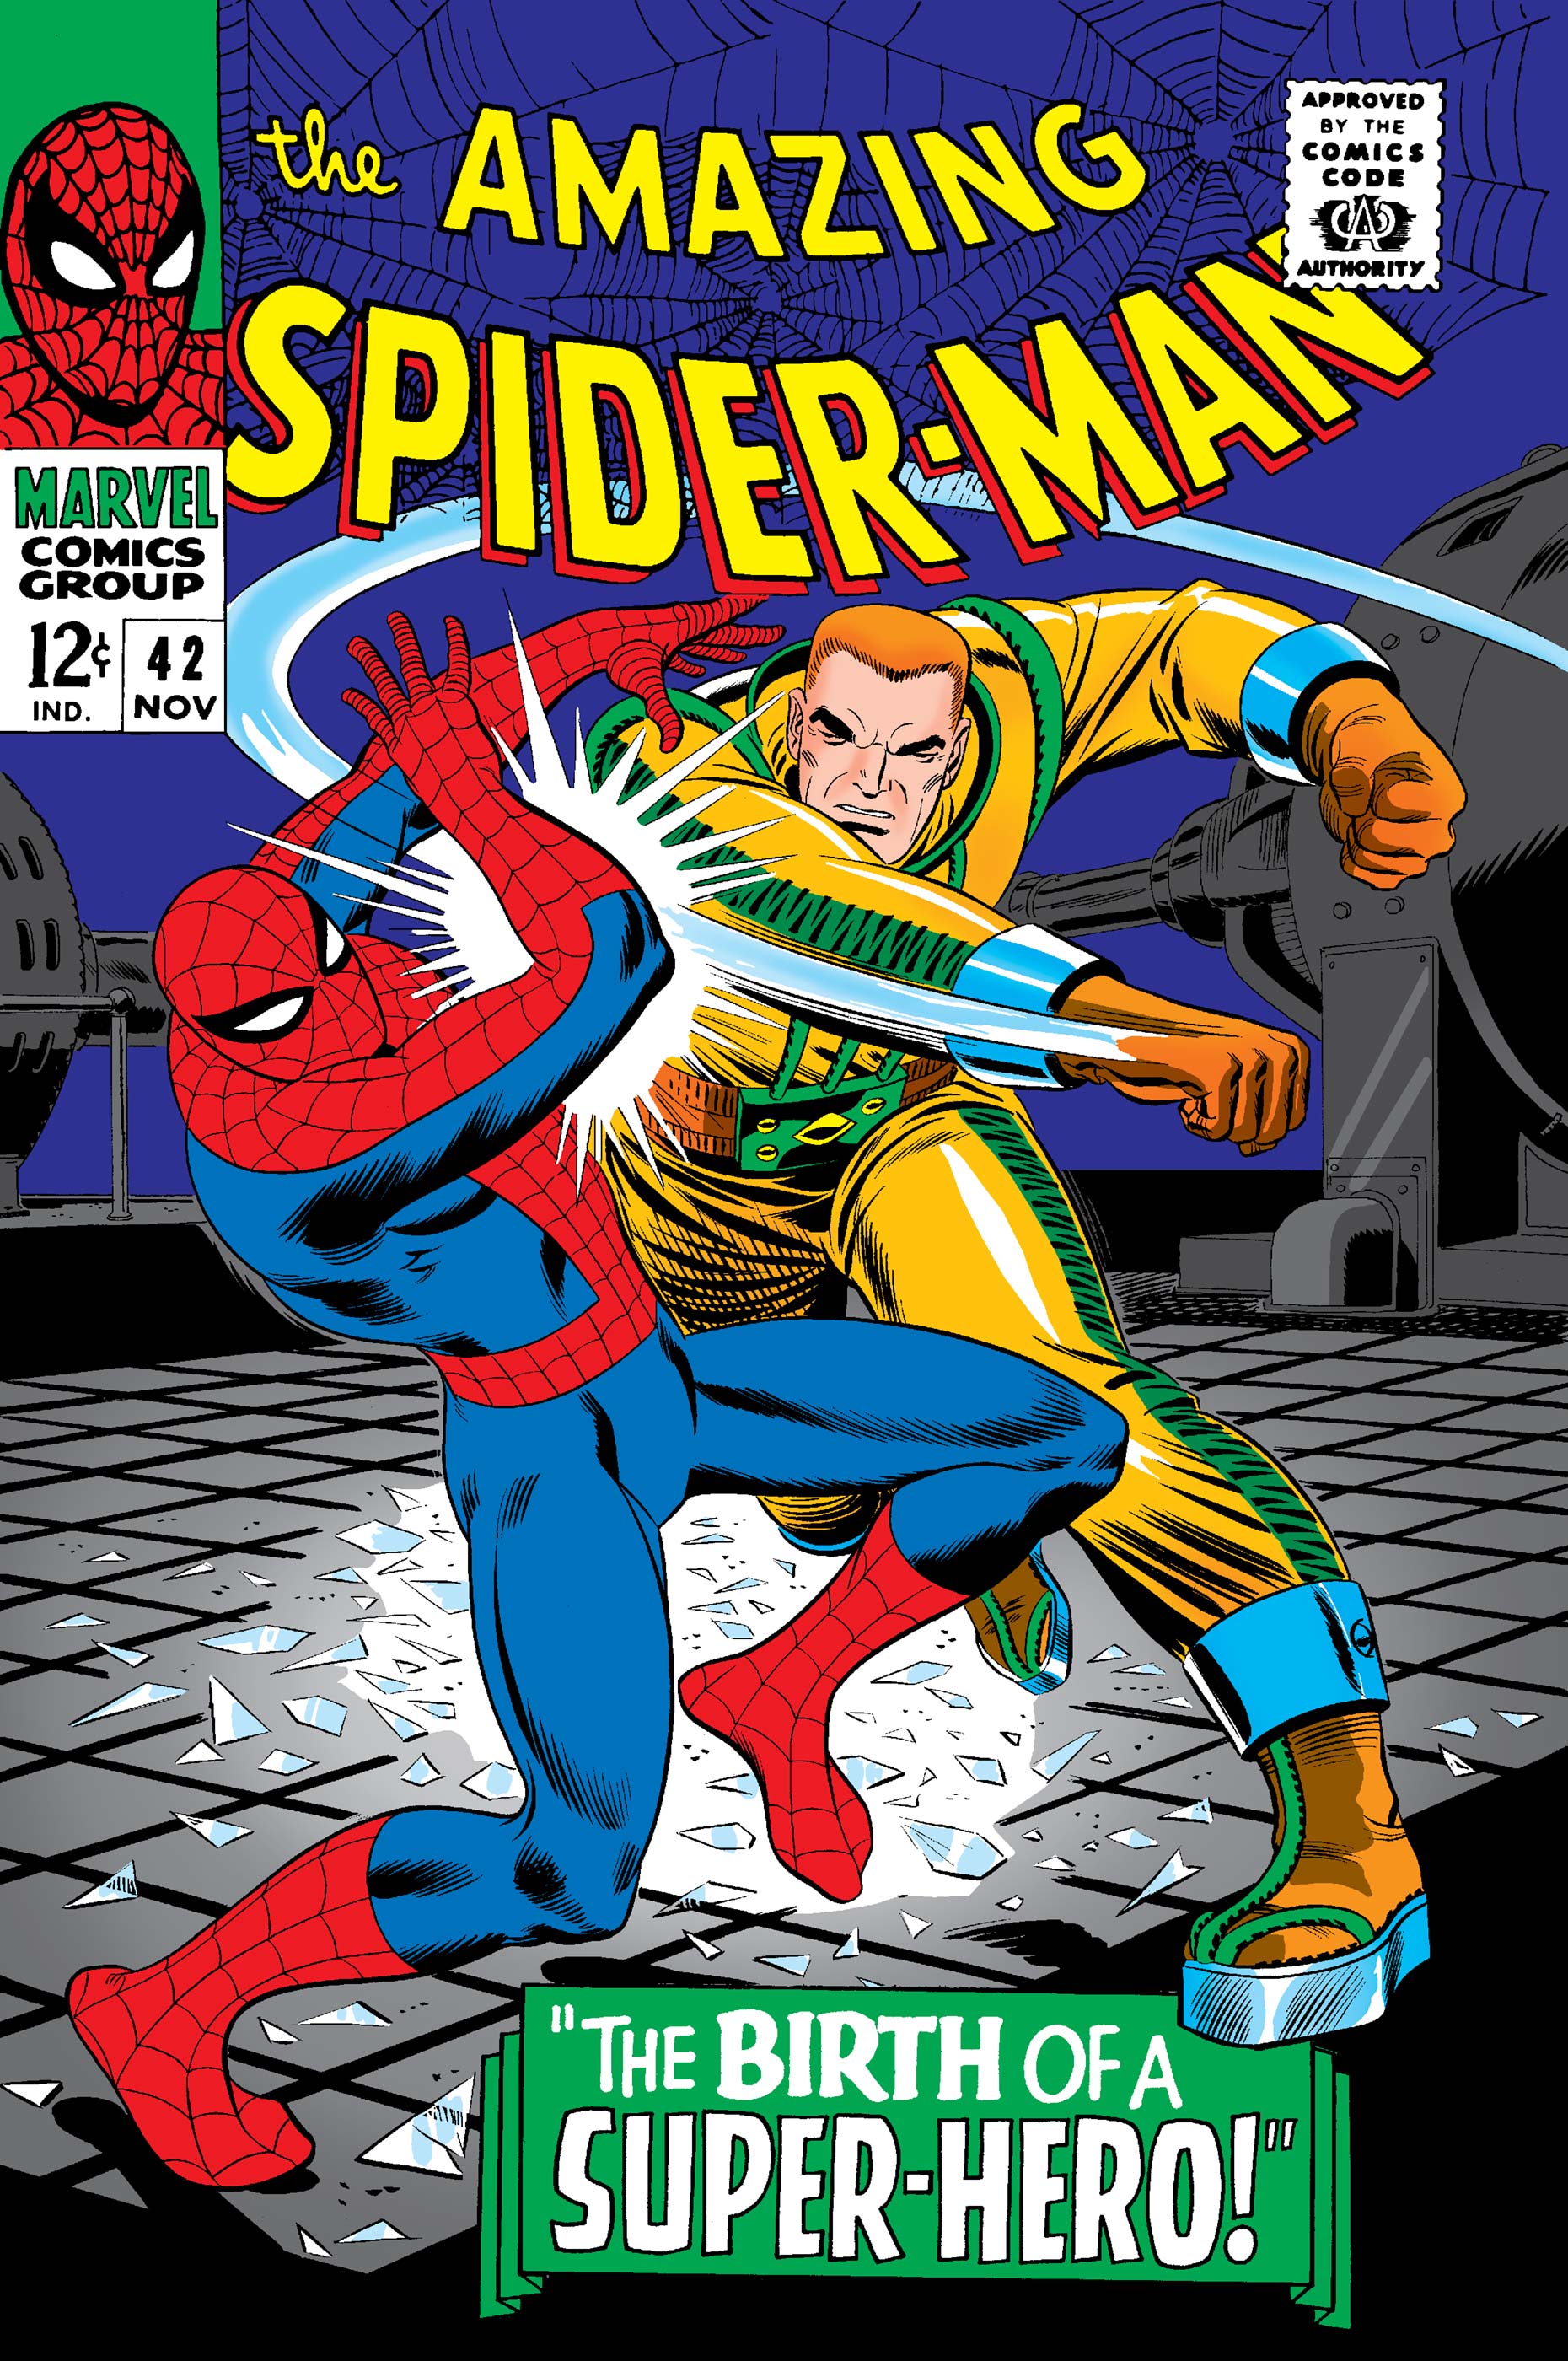 Spider man issue 42